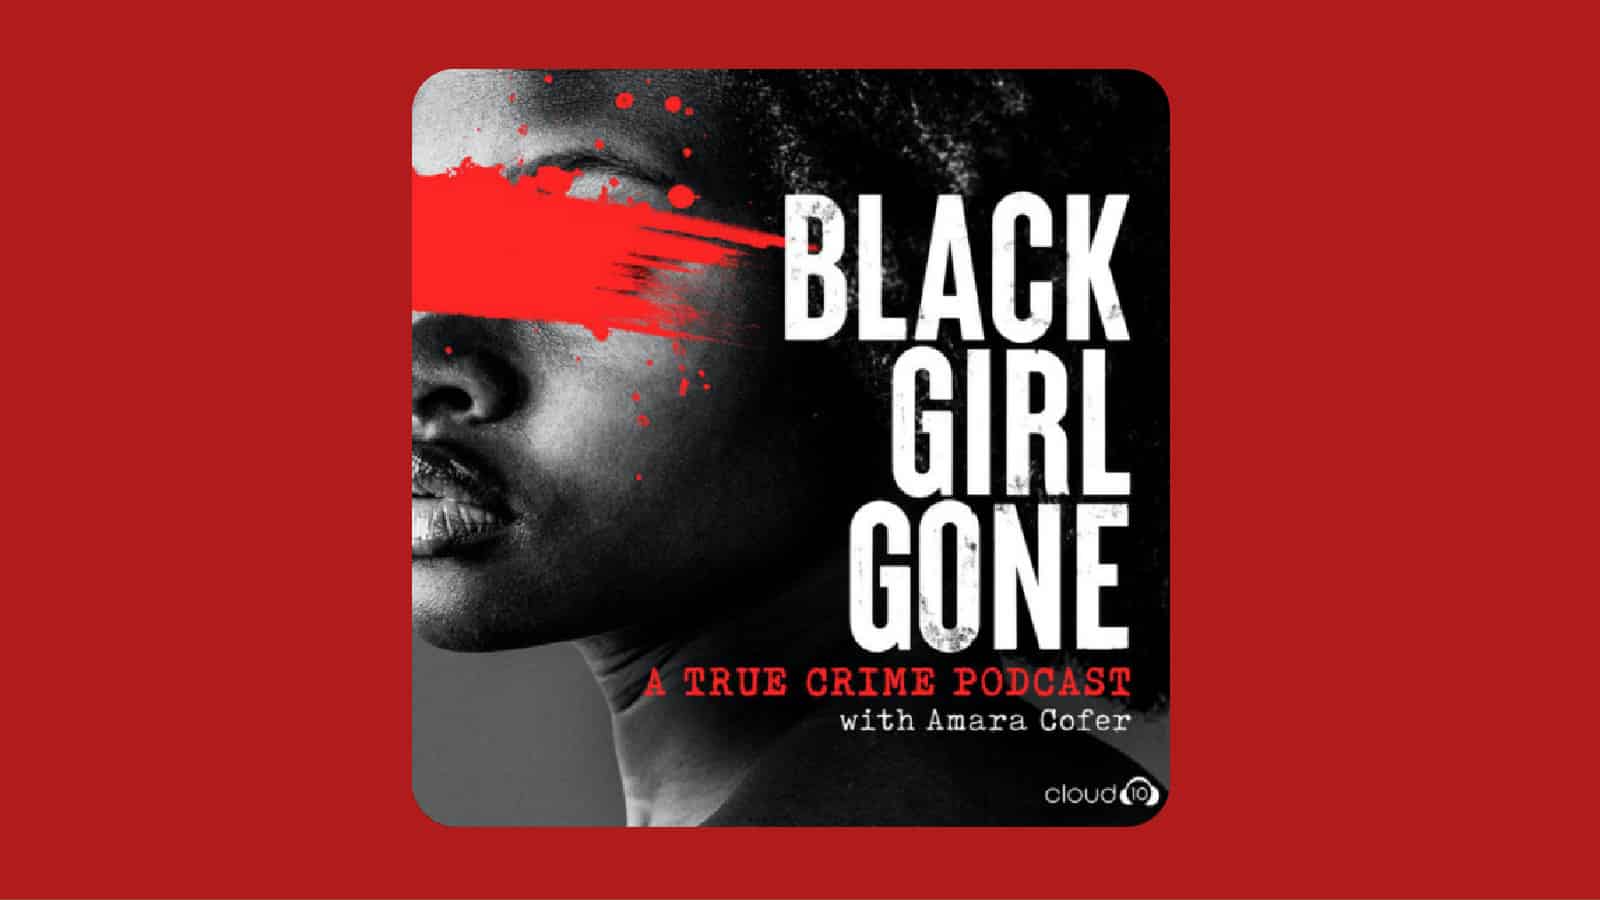 Black Girl Gone title